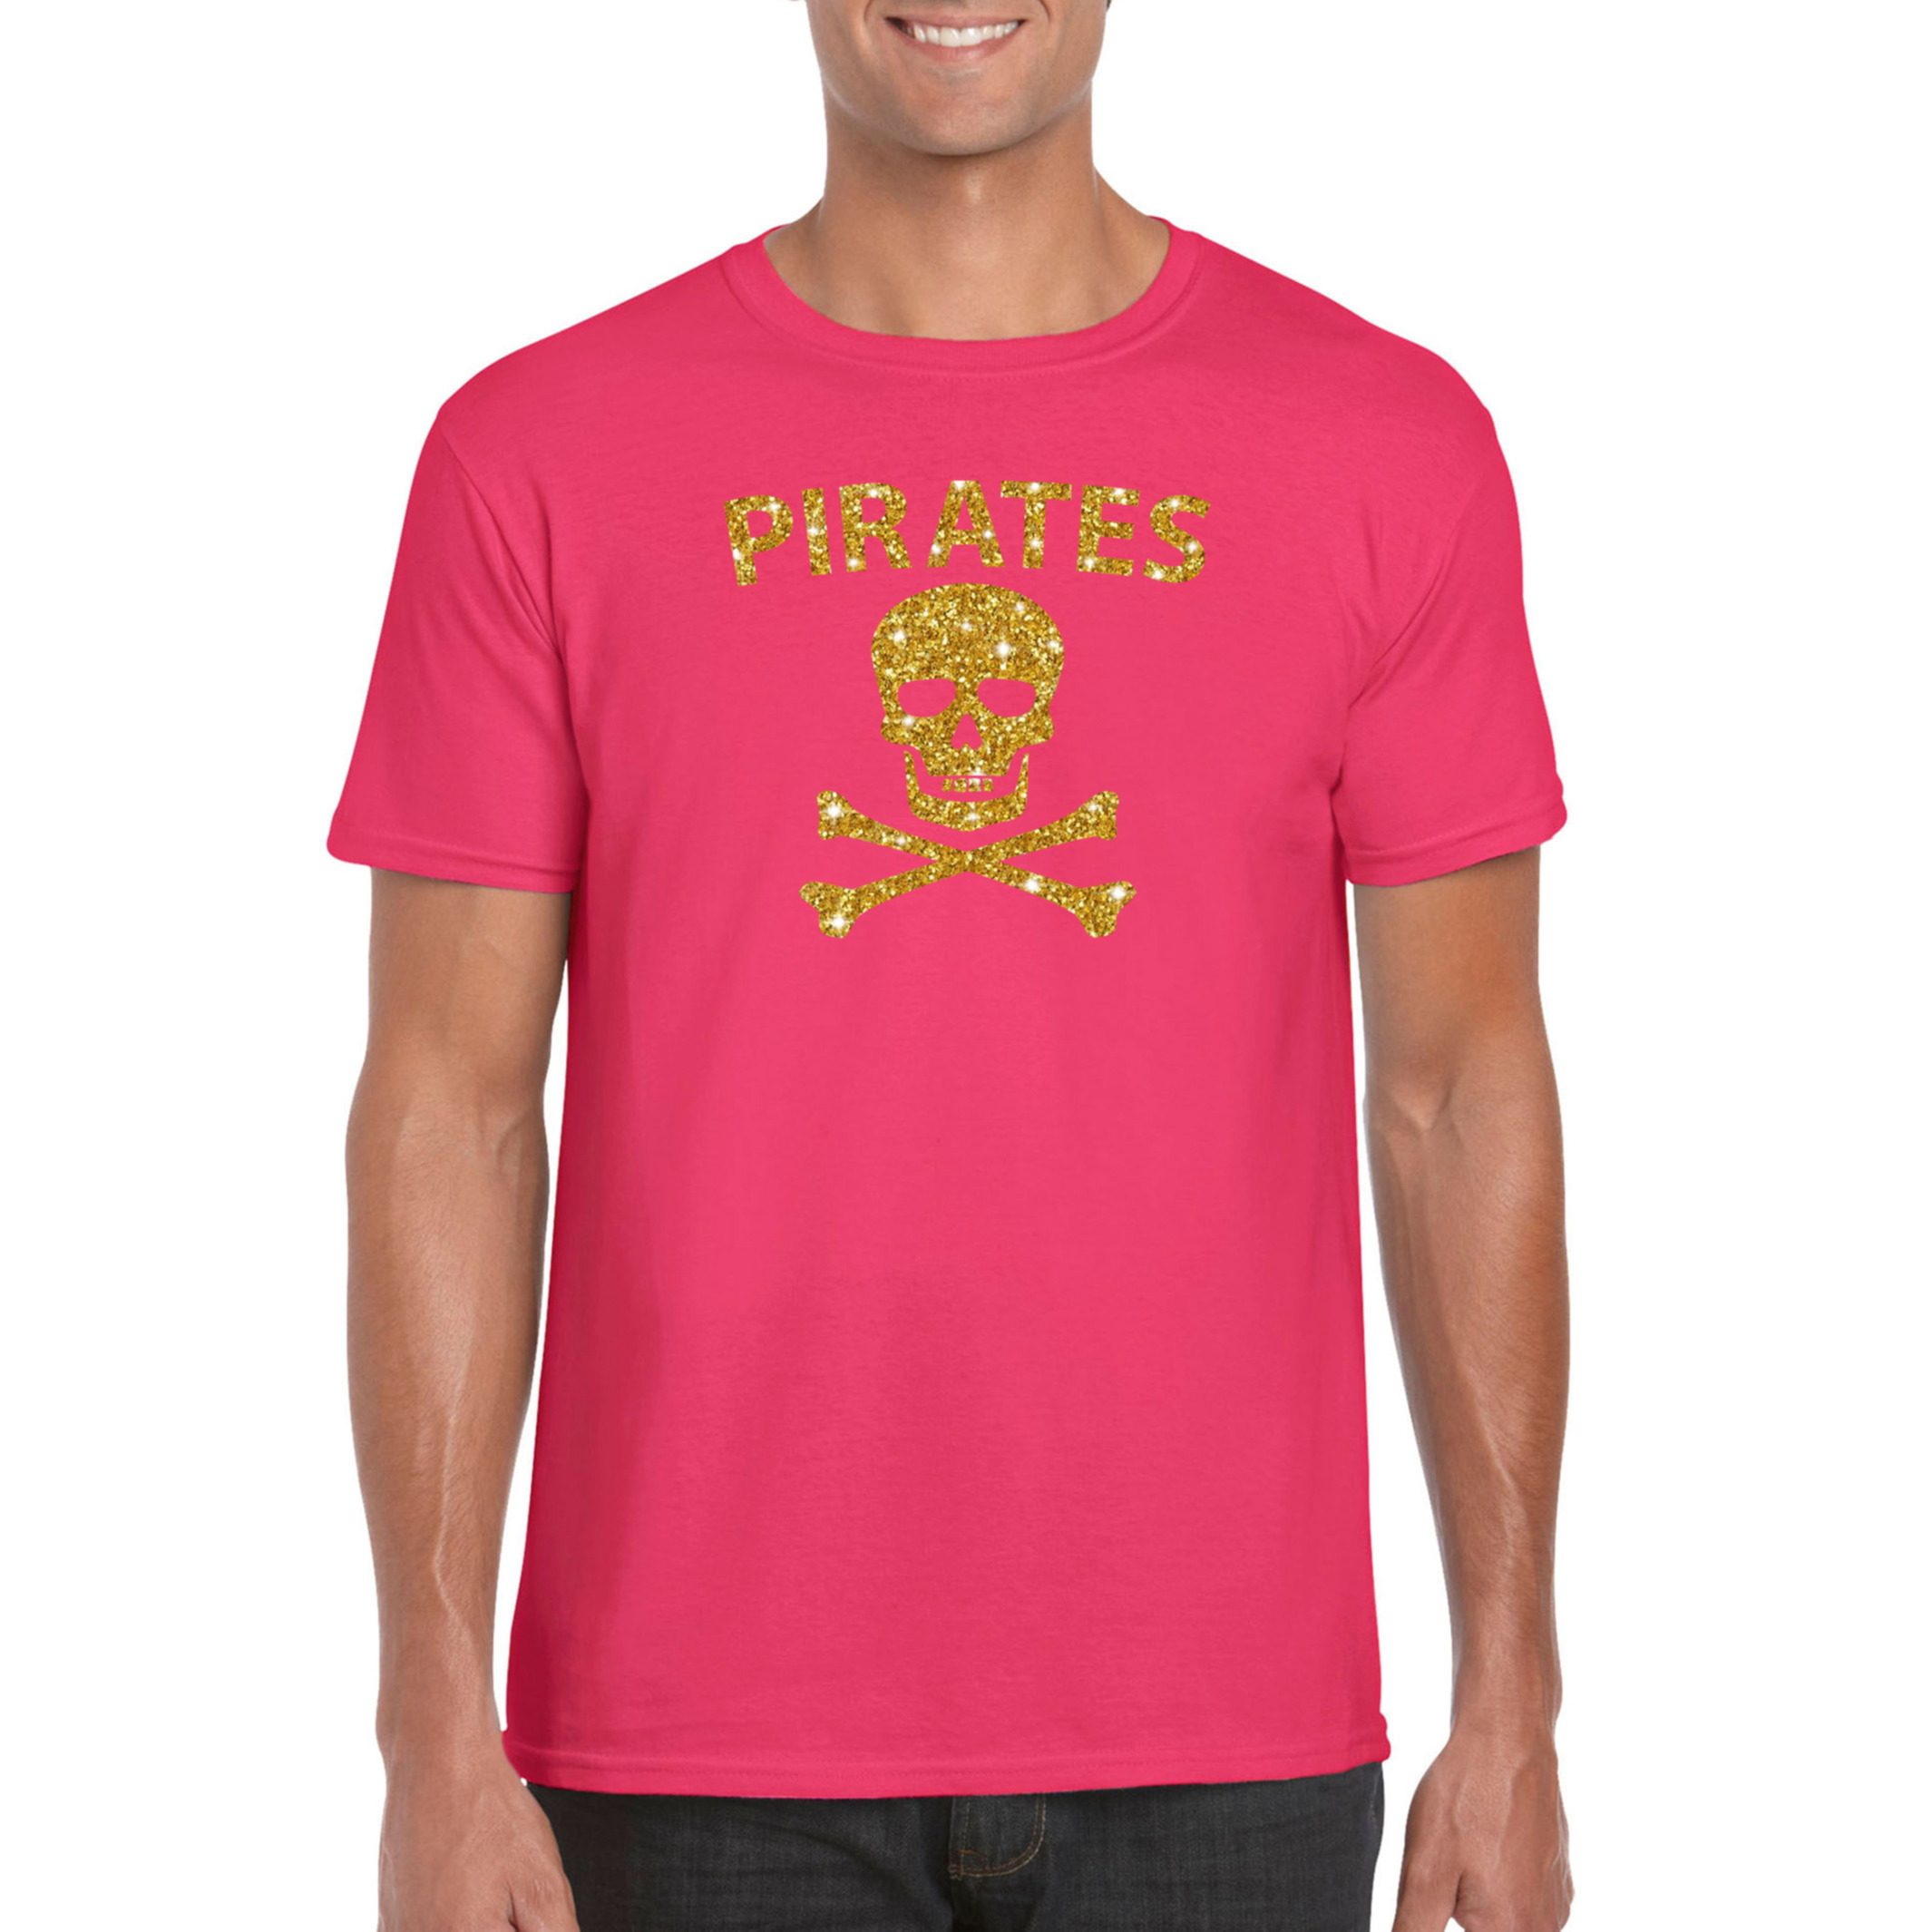 Piraten shirt-foute party verkleed kostuum-outfit goud glitter roze heren